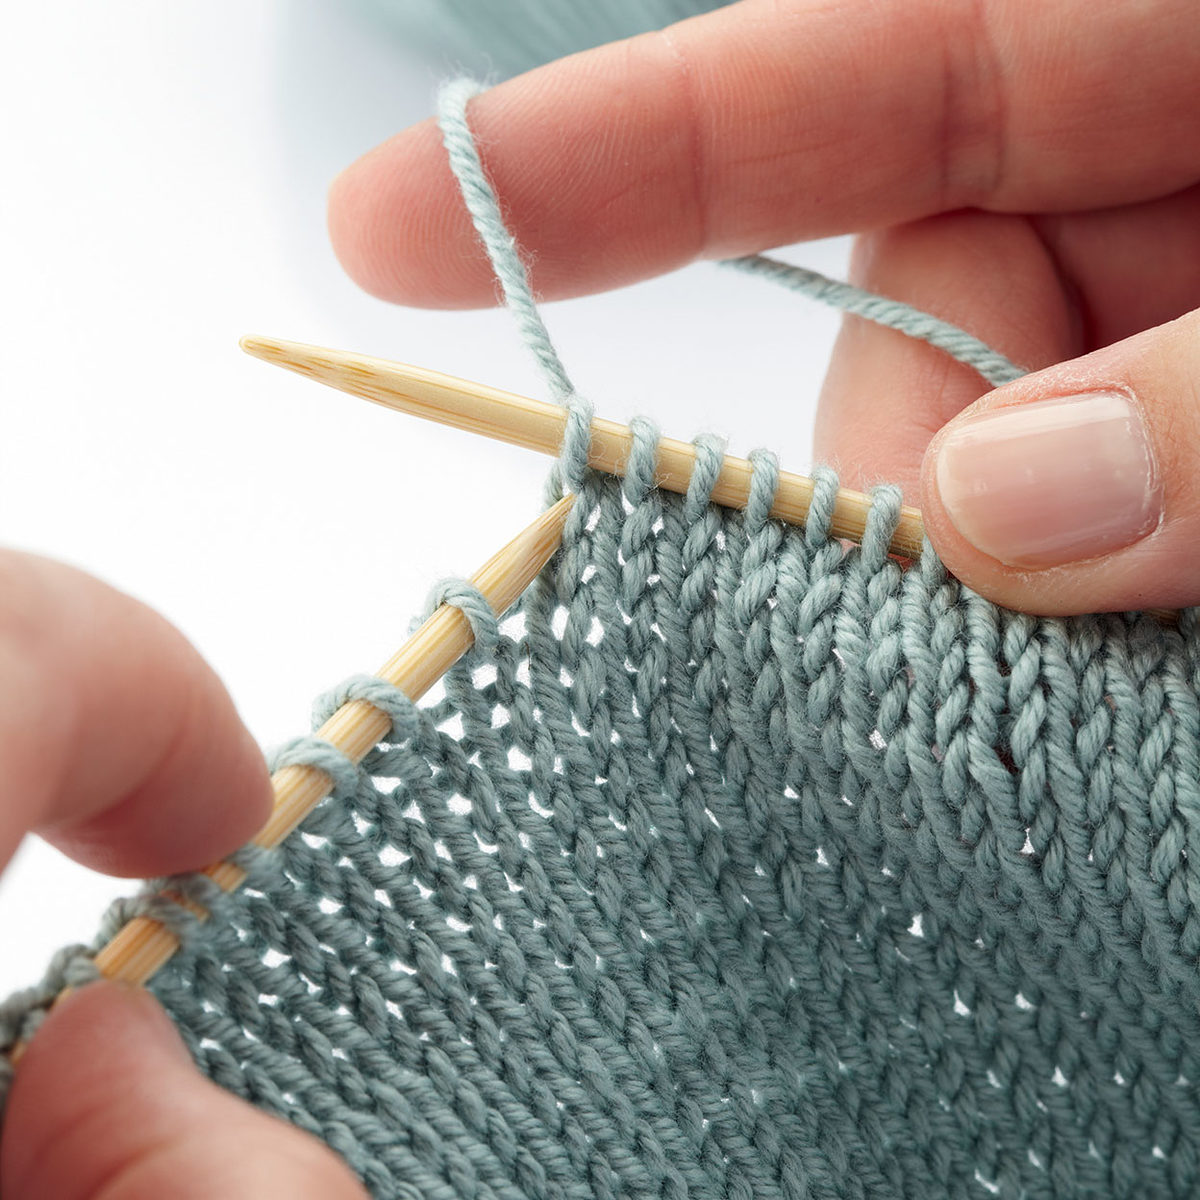 ARTICLE +TUTO VIDEO] Comment tricoter un snood ? - Les triconautes